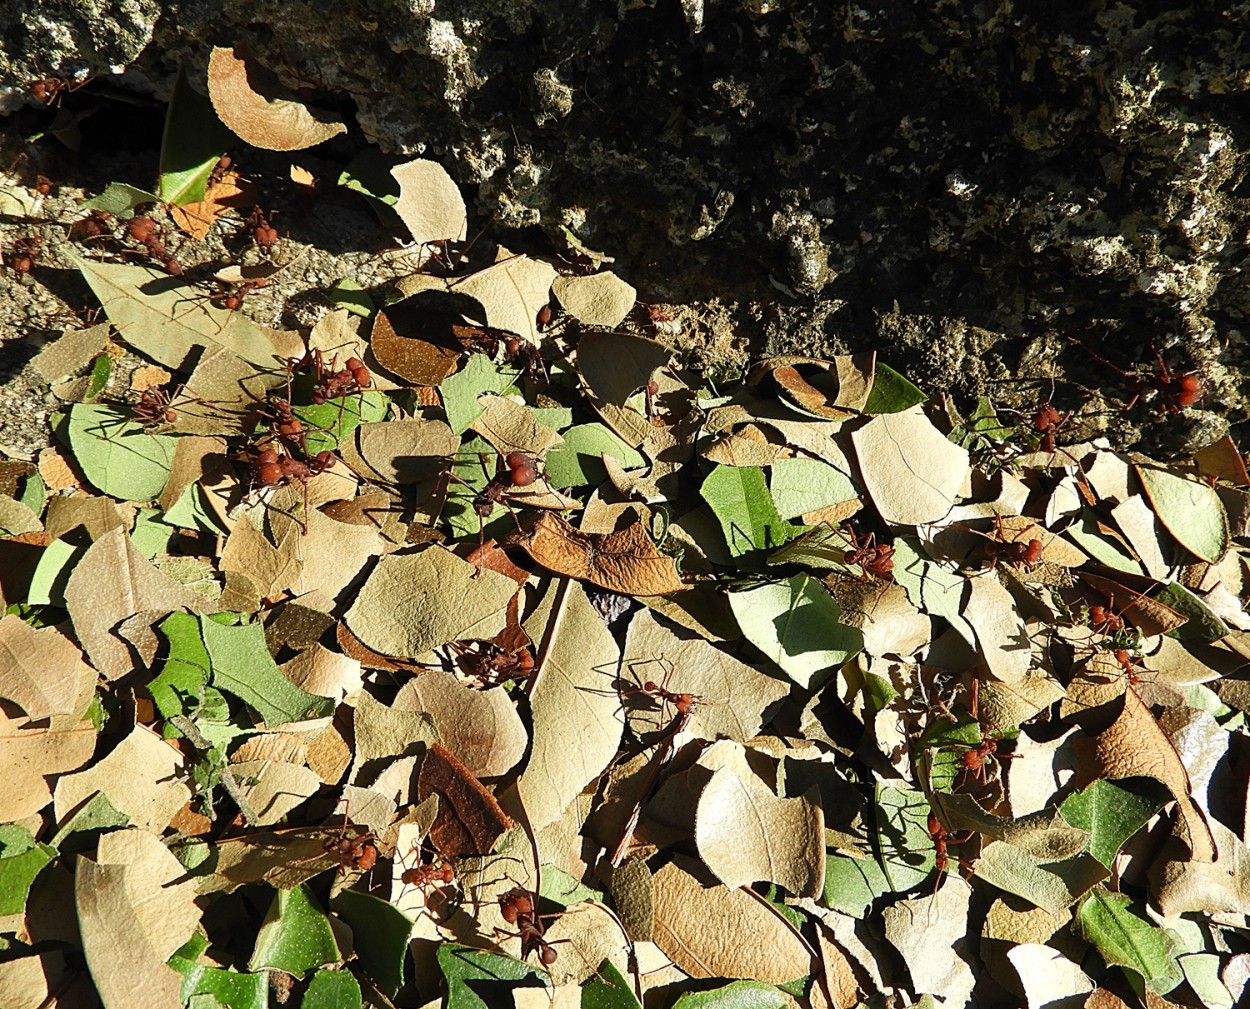 "Entre folhas e formigas, quase pisei no motivo." de Decio Badari